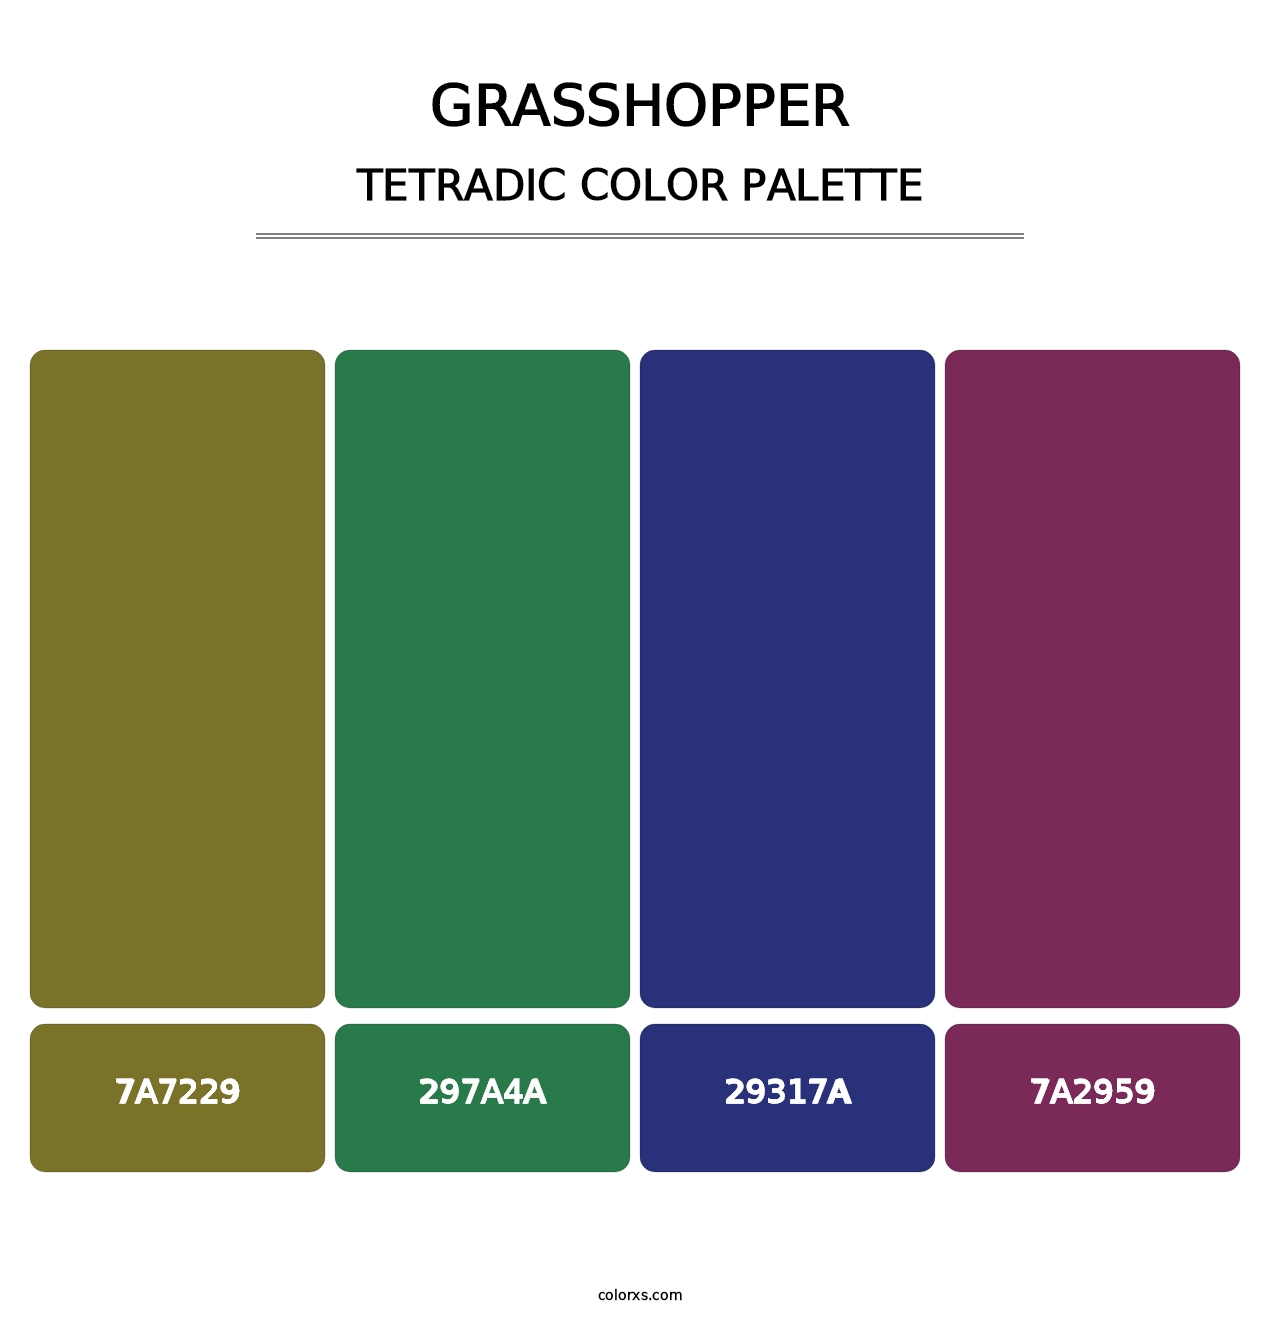 Grasshopper - Tetradic Color Palette